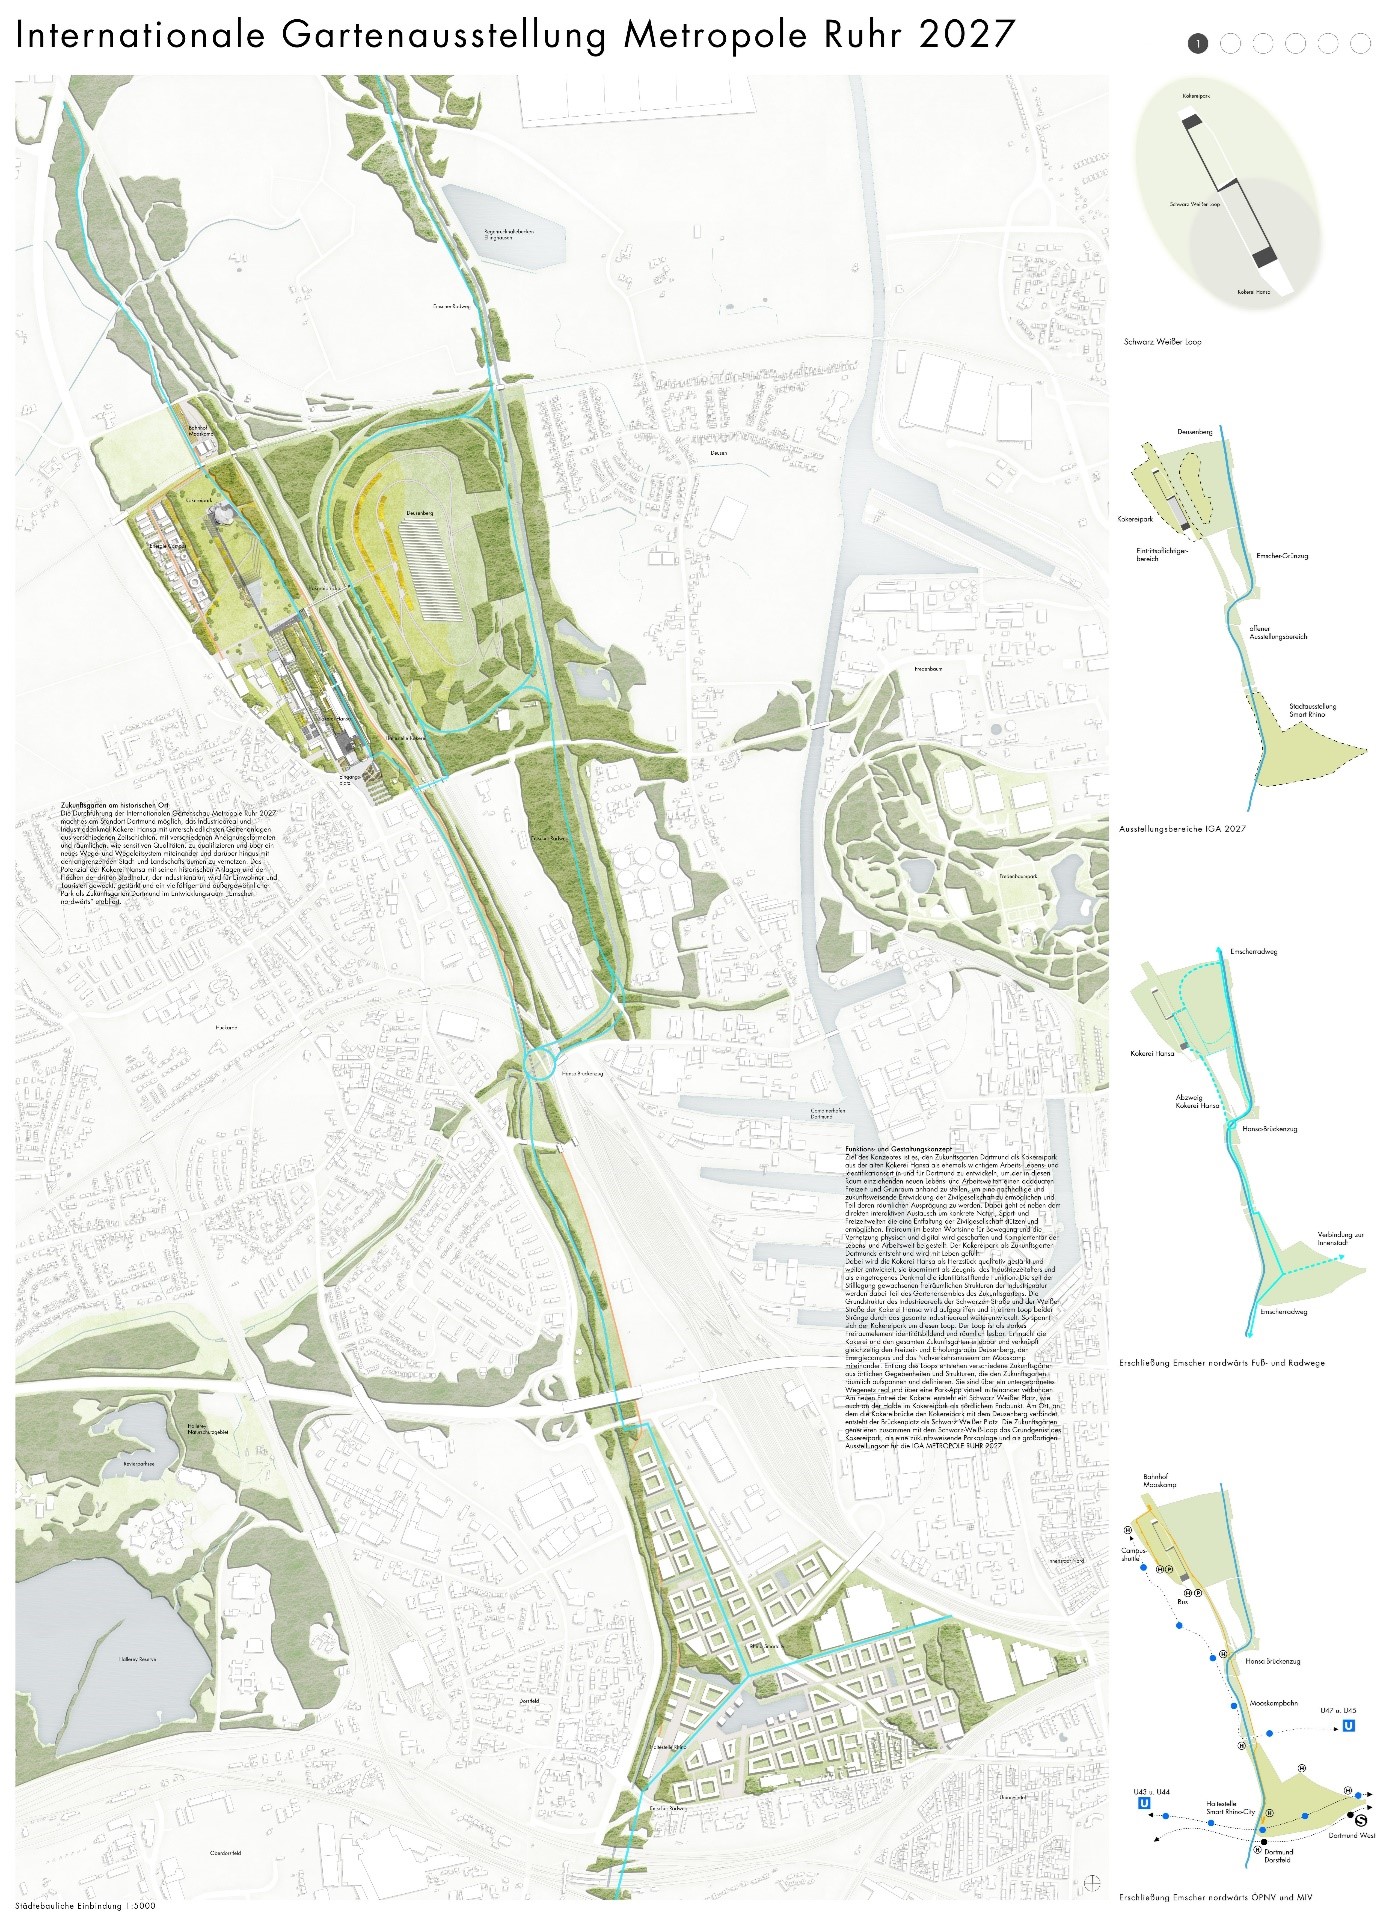 Das Bild zeigt den Plan des Architekturbüros für den Dortmunder Zukunftsgarten.